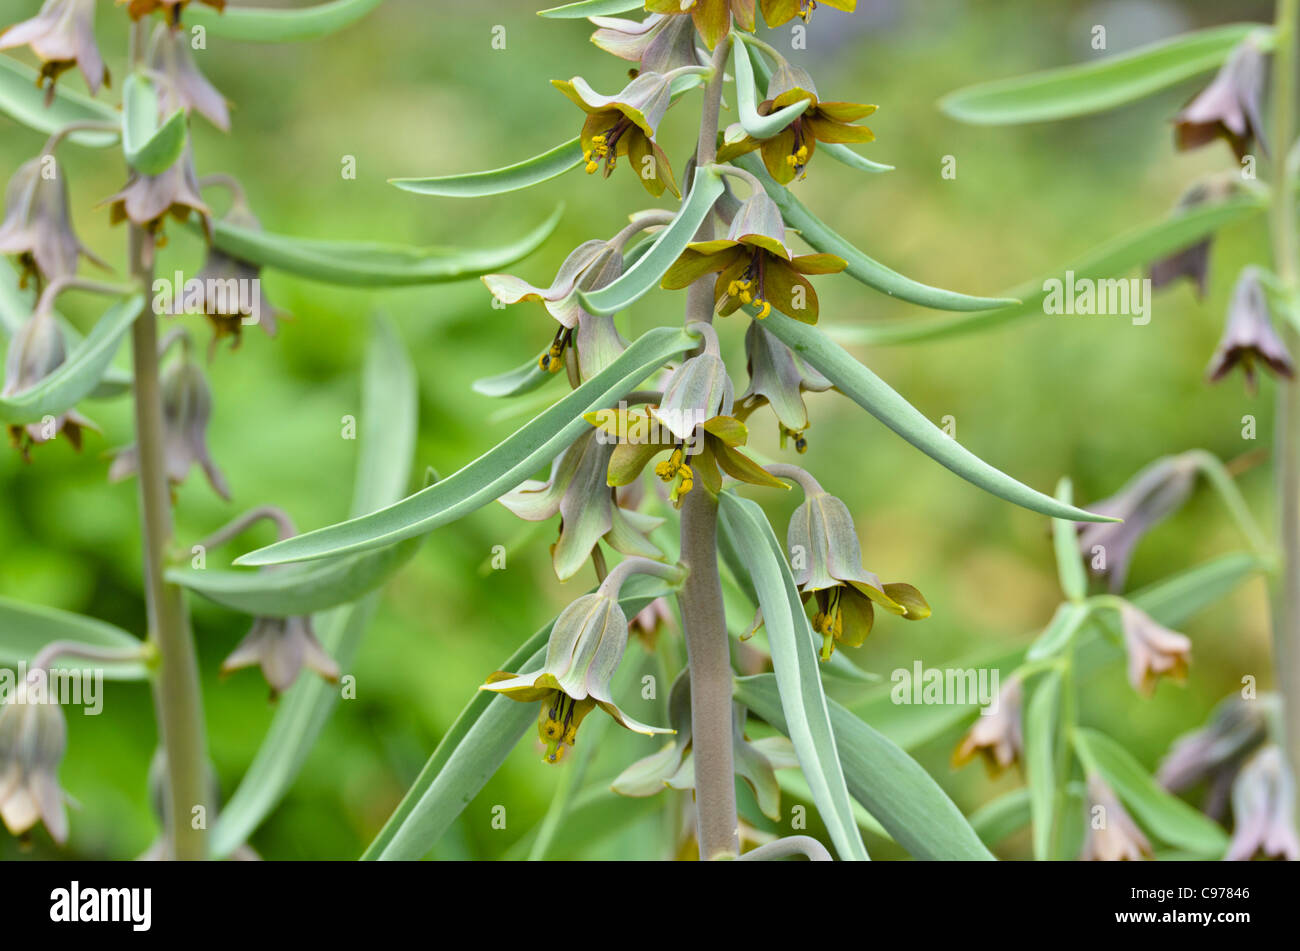 Fritillary (Fritillaria sewerzowii syn. Korolkowia sewerzowii) Stock Photo